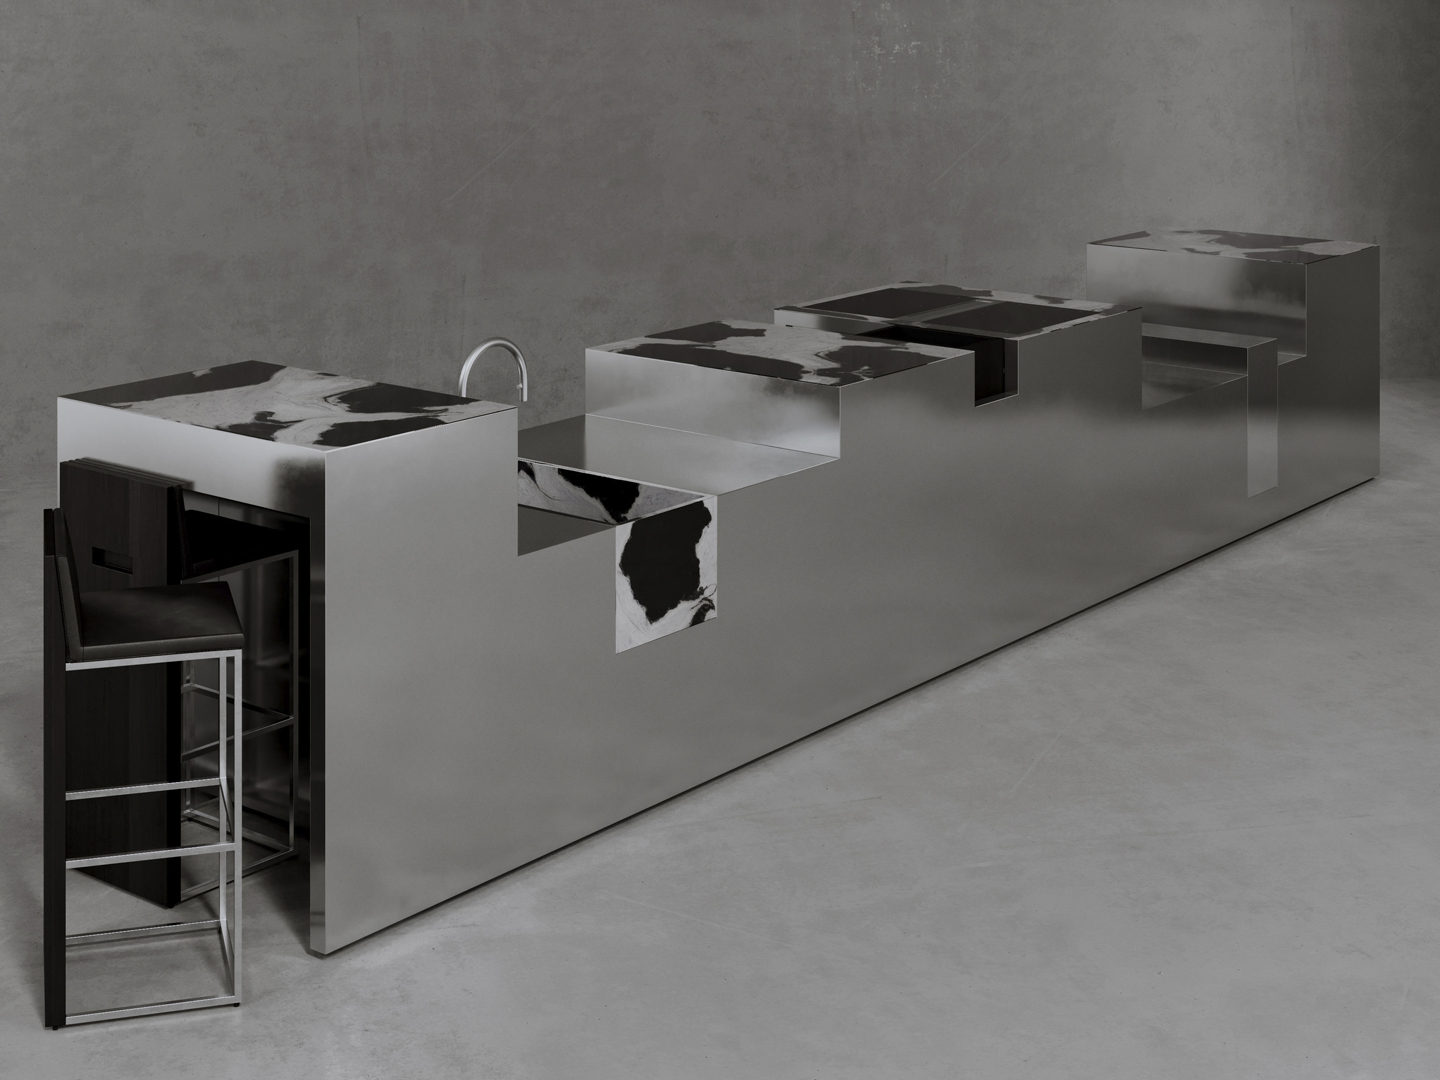 Strato_design_SKYLINE_kitchen island_titanium_marble_mirror stainless steel_2